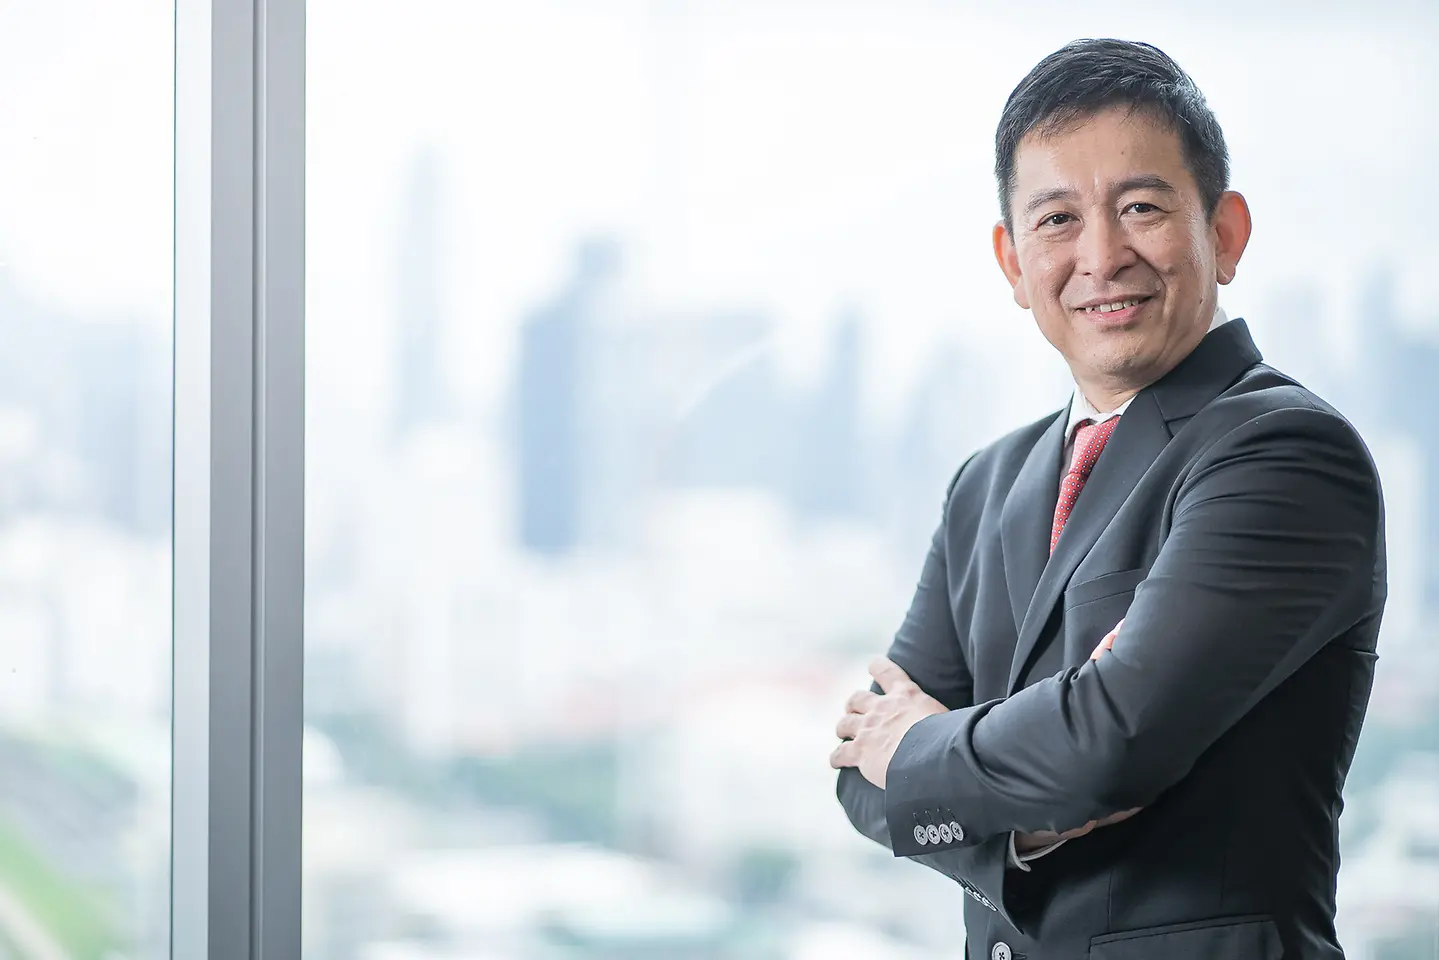 แอนเดรียนโต้ จายาเปอร์นา ประธาน บริษัทเฮงเค็ล ประเทศไทย | Andrianto Jayapurna, President Henkel Thailand